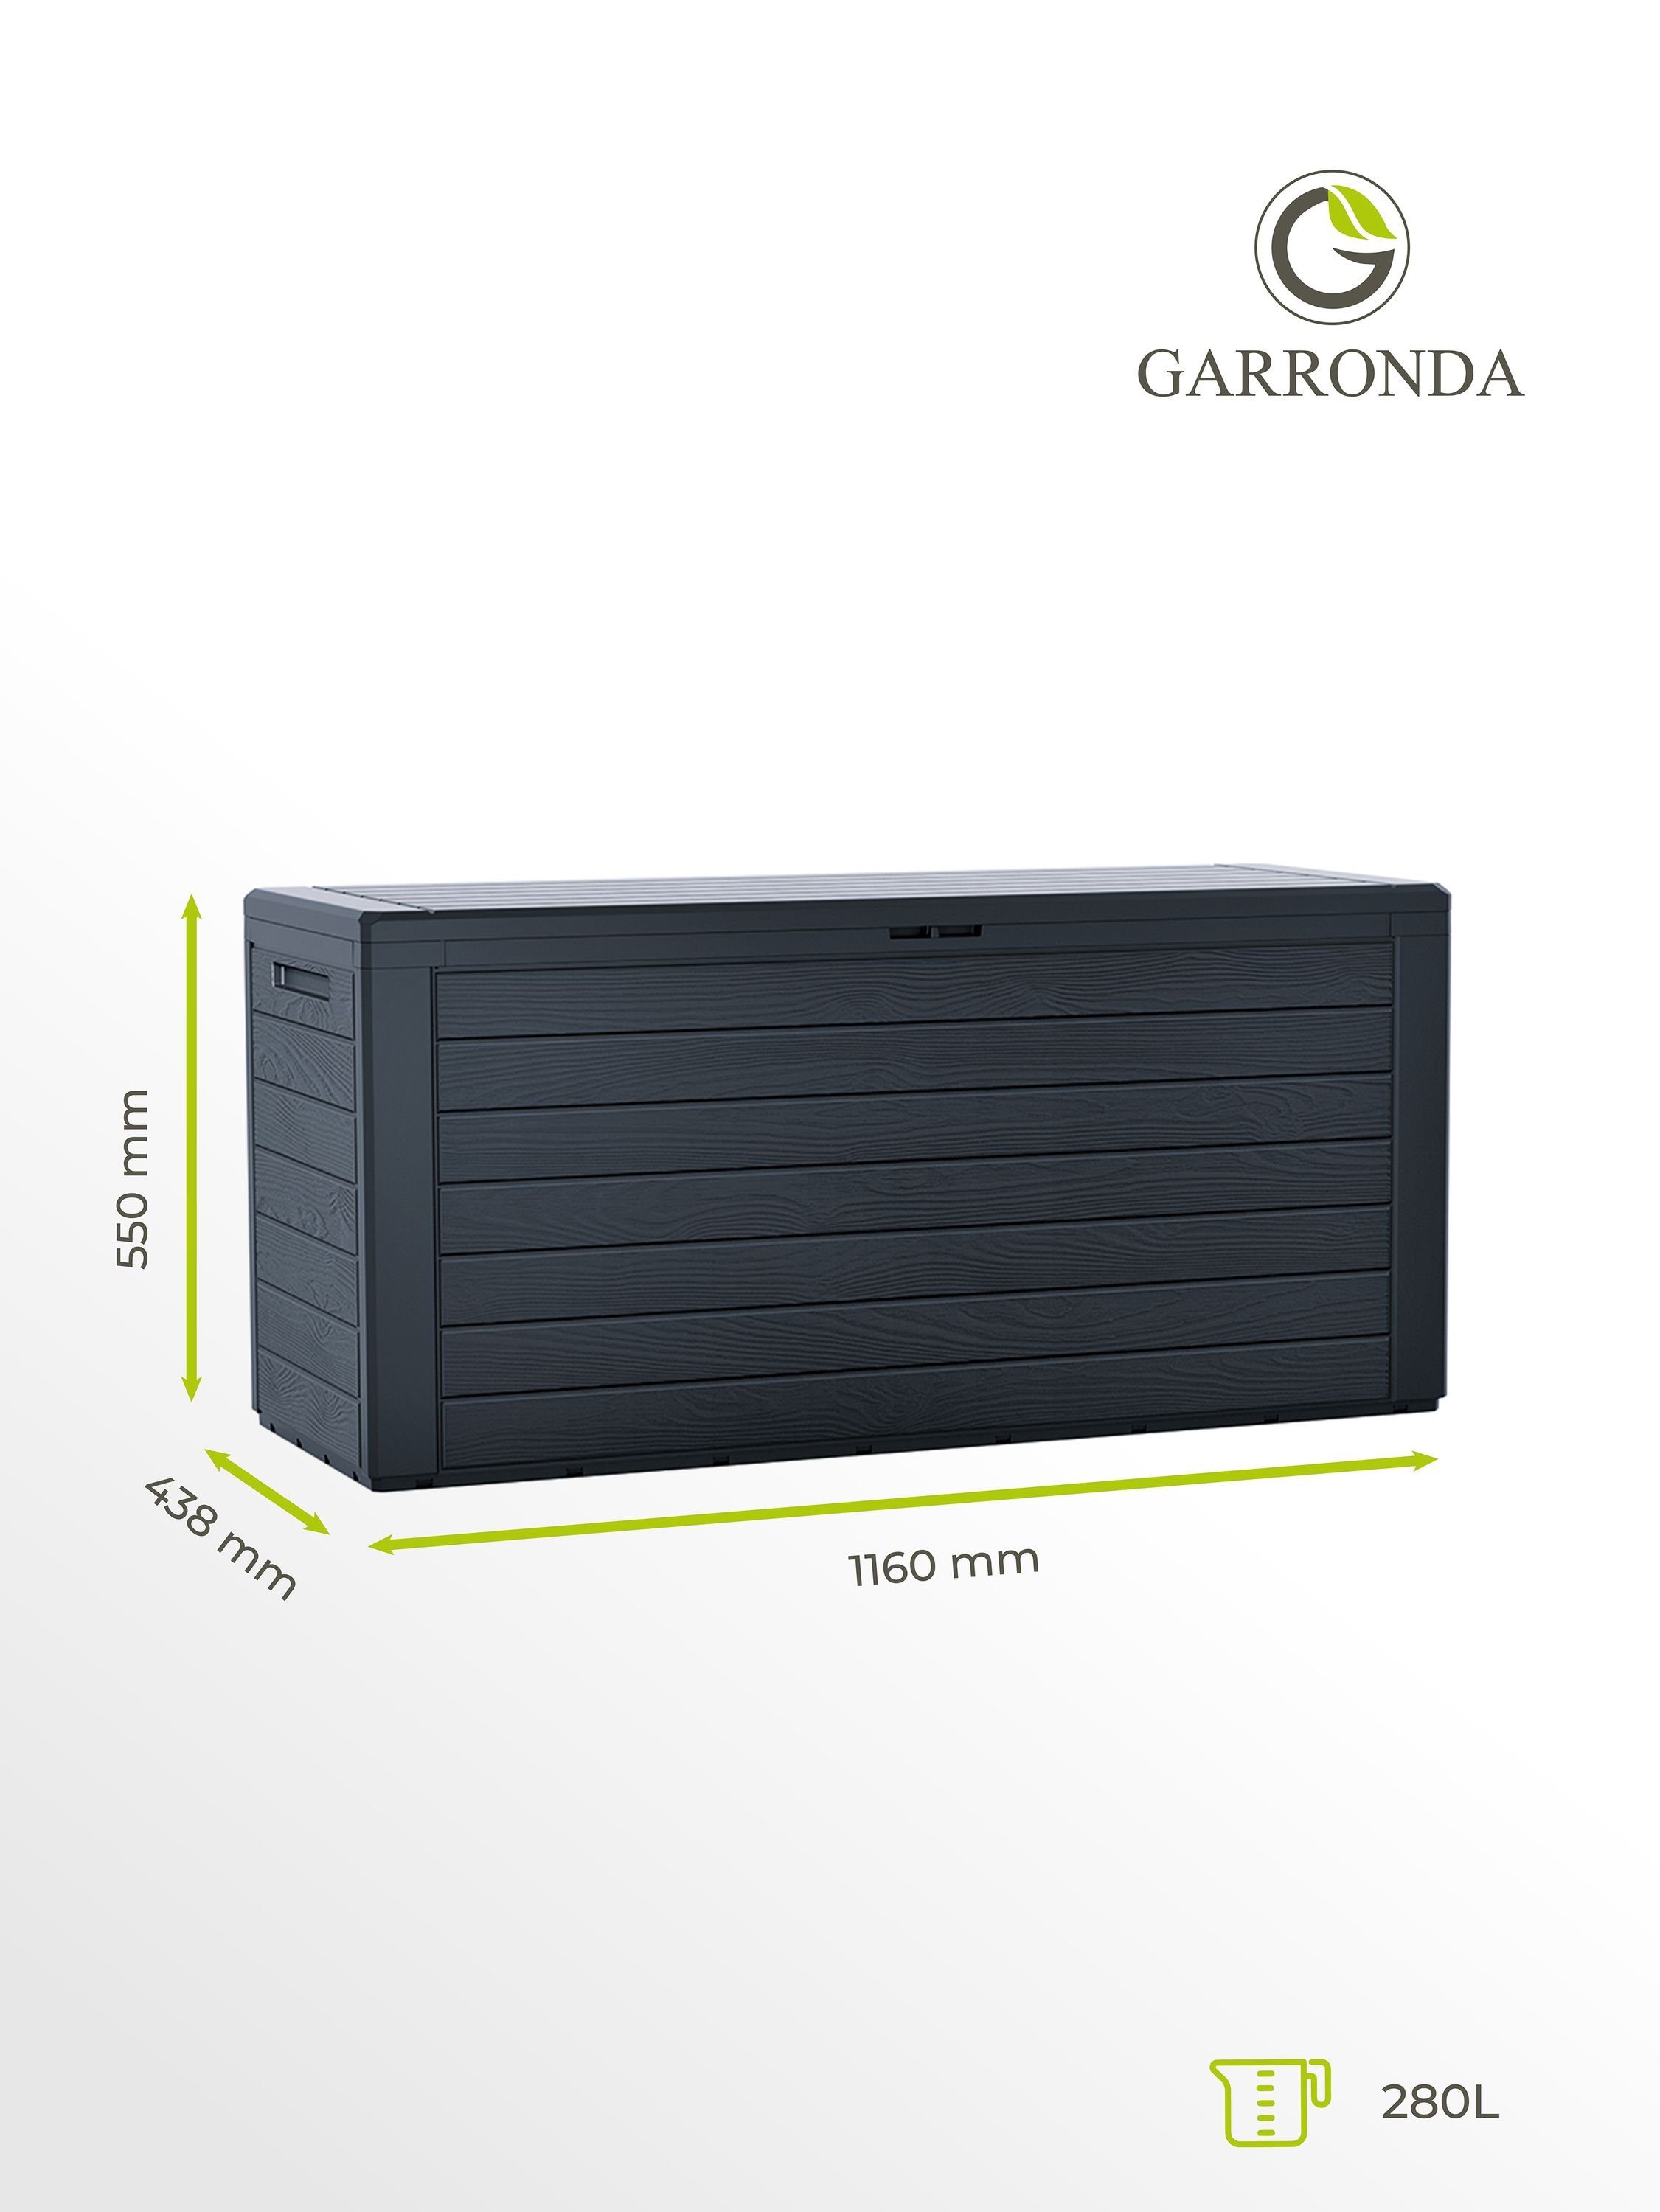 Gartenruhe Gerätebox Gartenbox 280L GD-0050 Kissenbox Anthrazit Garronda